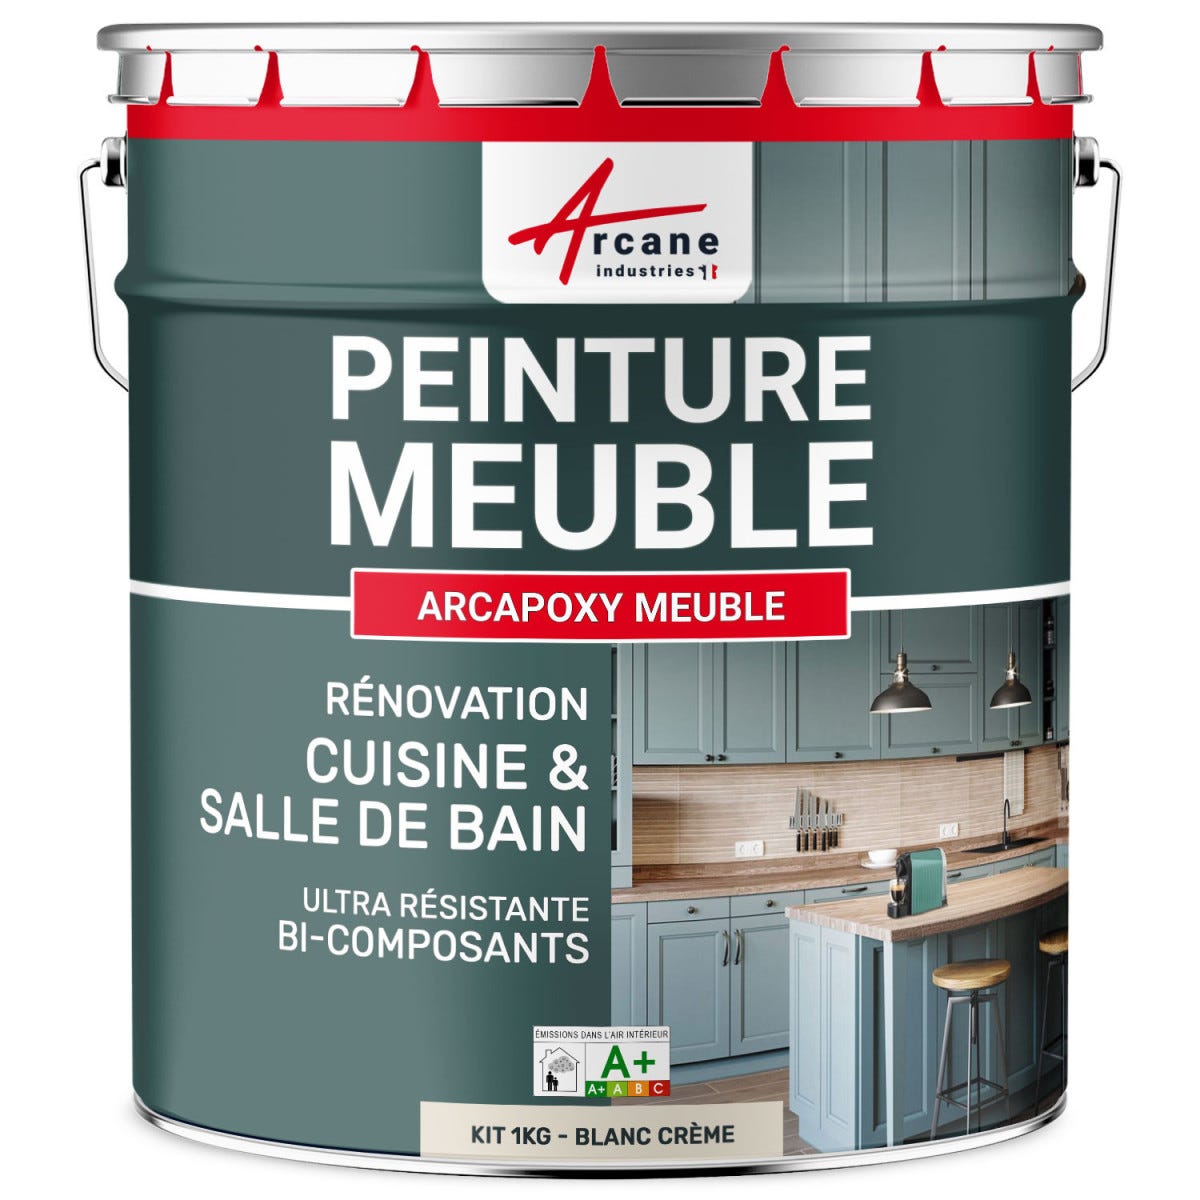 Peinture Meuble Cuisine, Salle de Bain - Résine ARCAPOXY MEUBLE - 1 kg (jusqu'à 12 m² en 2 couches) - Blanc Crème - RAL 9001 - ARCANE INDUSTRIES 0